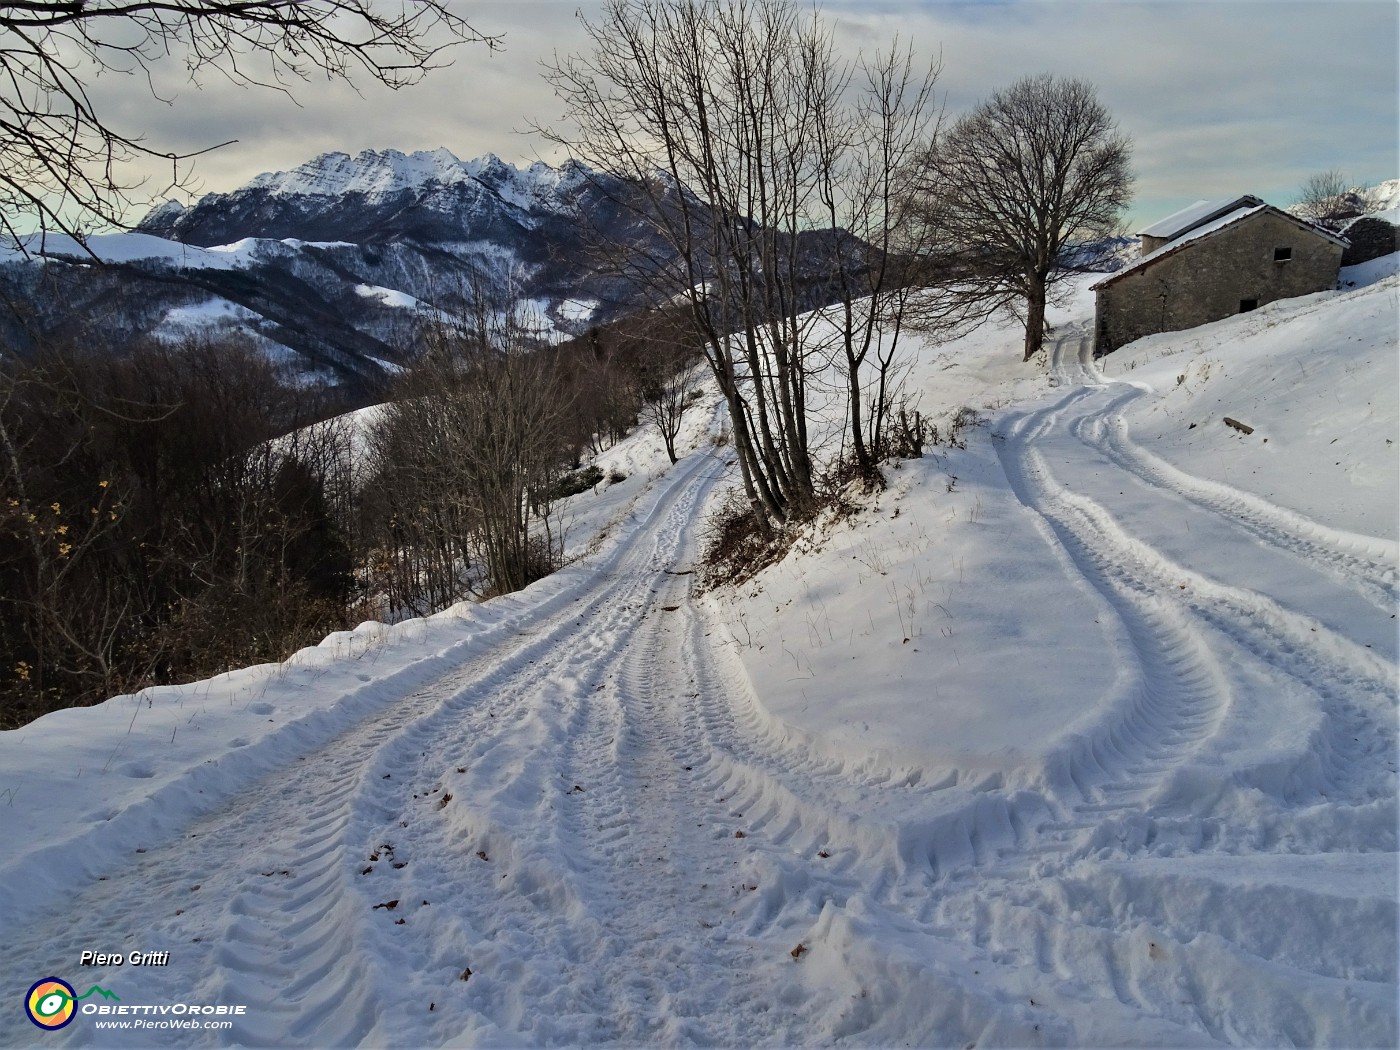 02 Sulle nevi di Prato GIugno con vista in Resegone.JPG